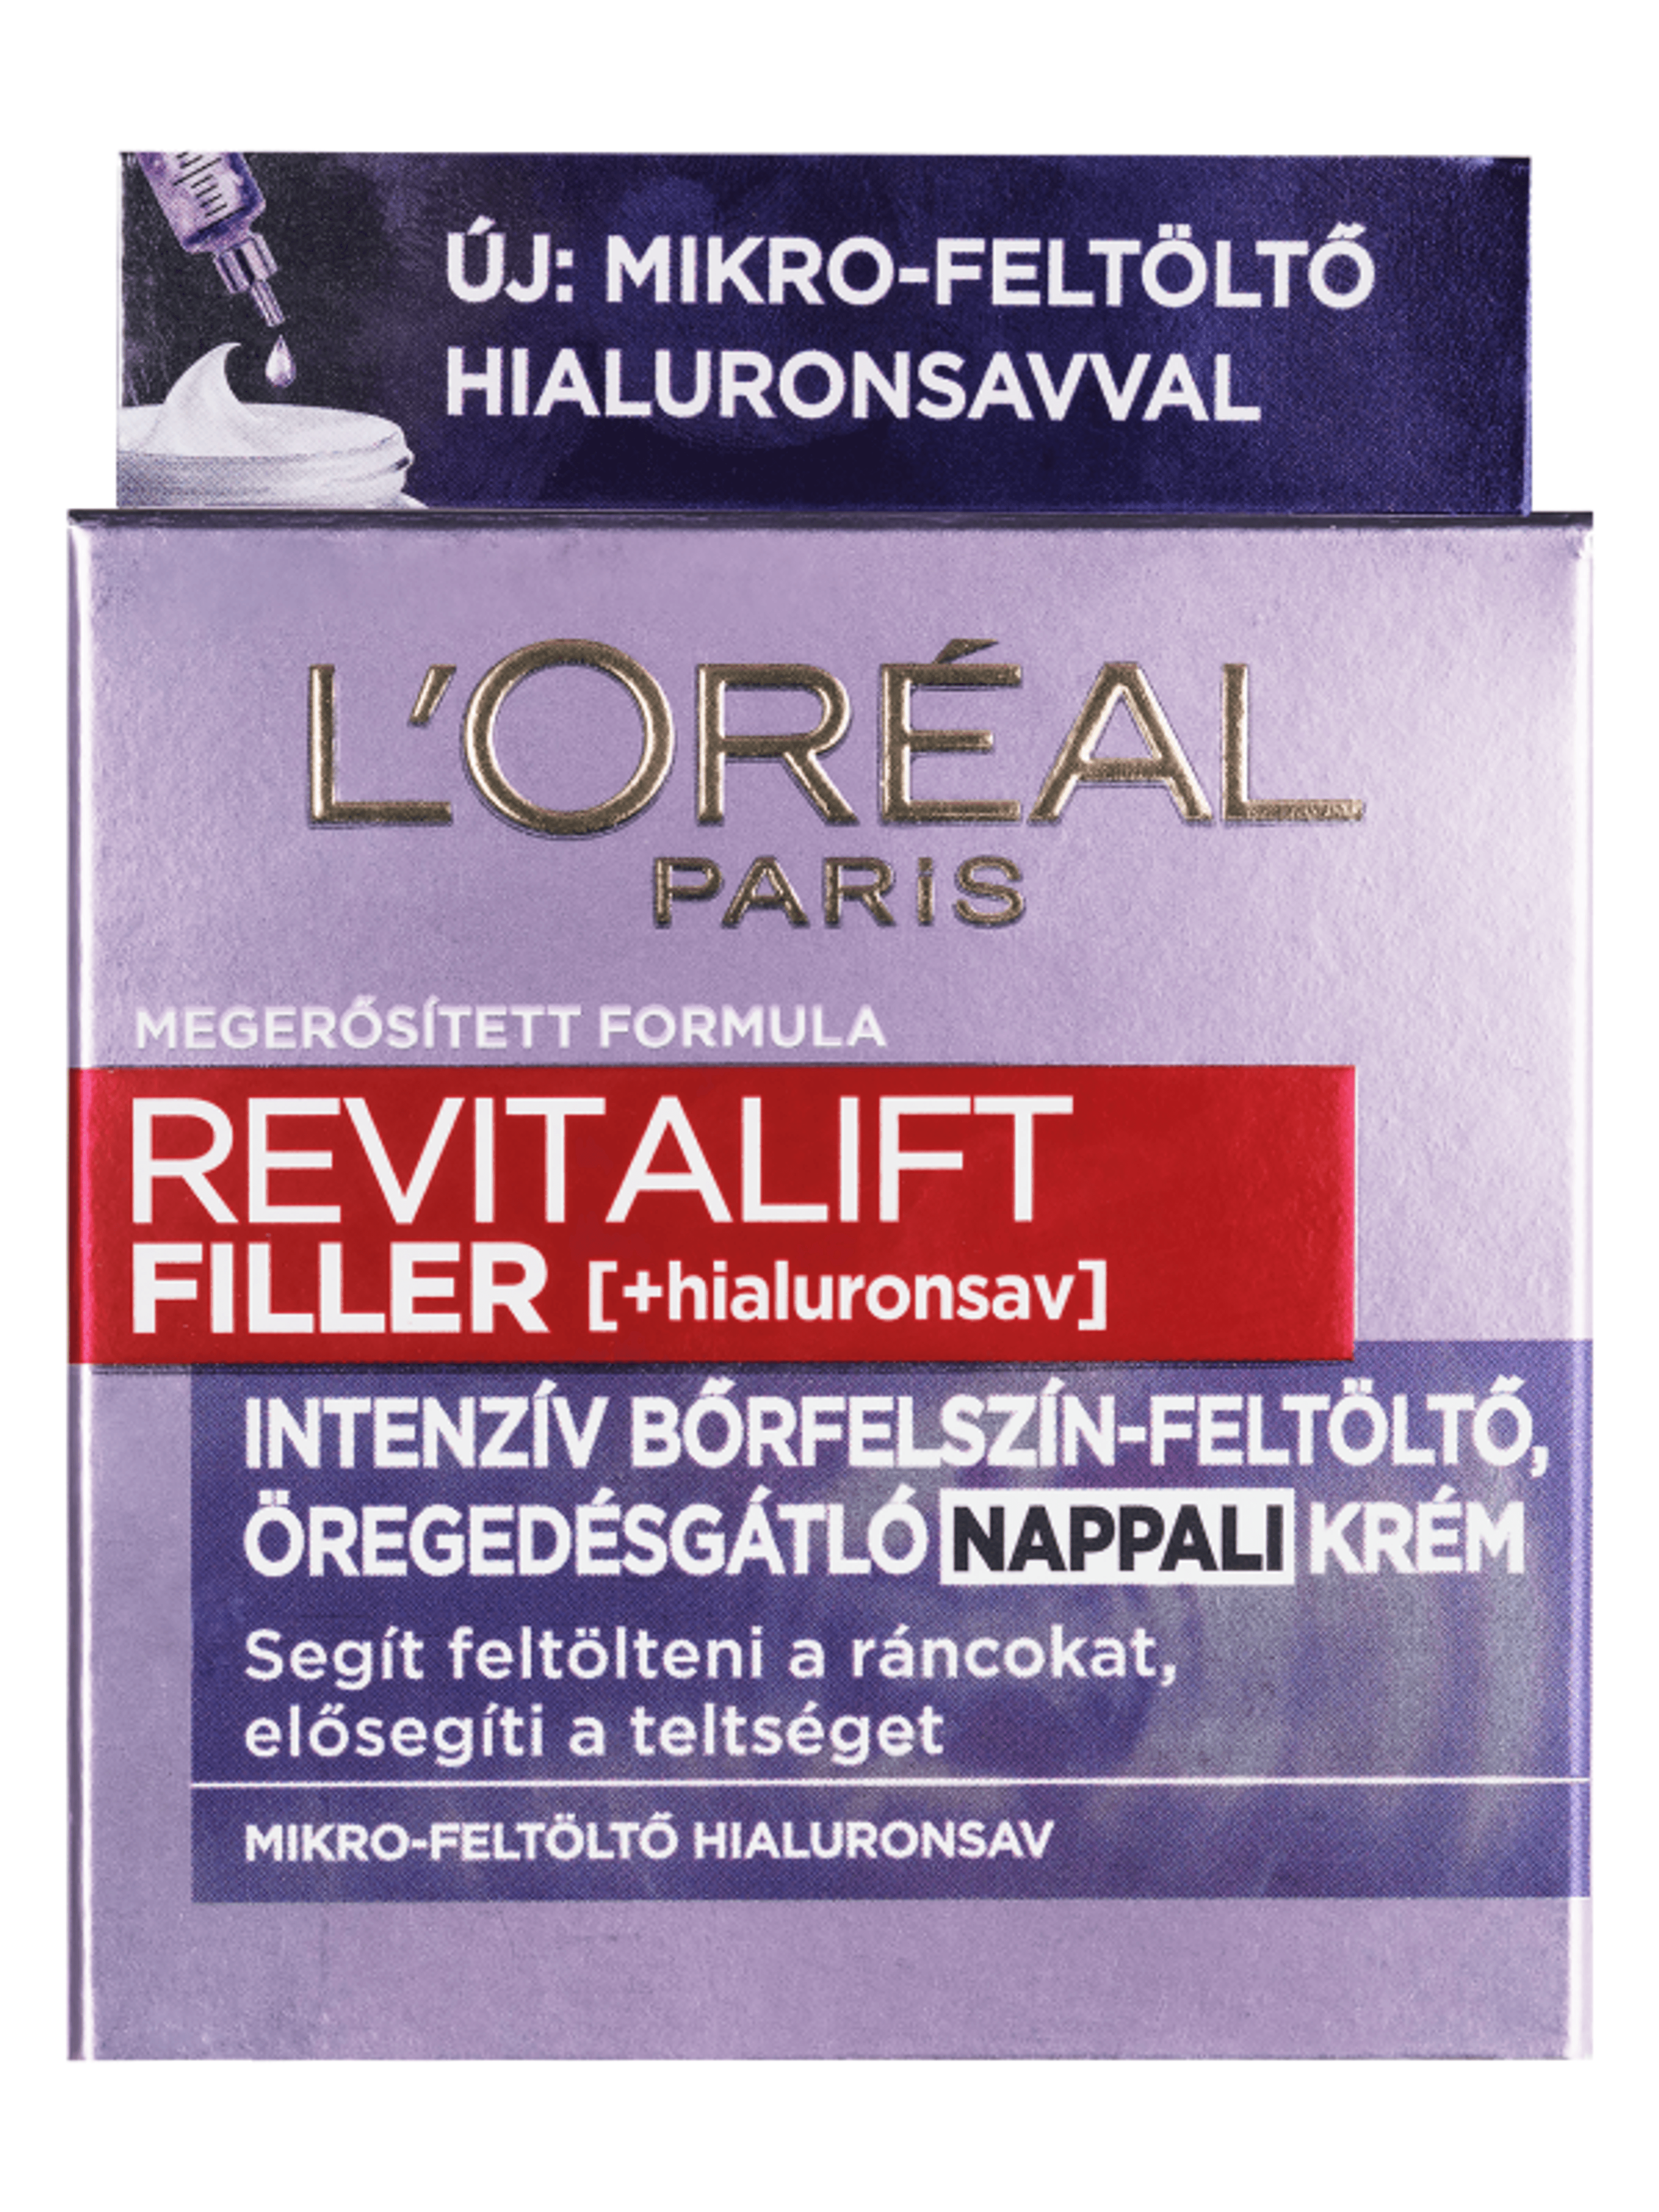 L'Oréal Paris Revitalift Filler ránctalanító,feltöltő nappali krém hialuronsavval 50ml - 1 db